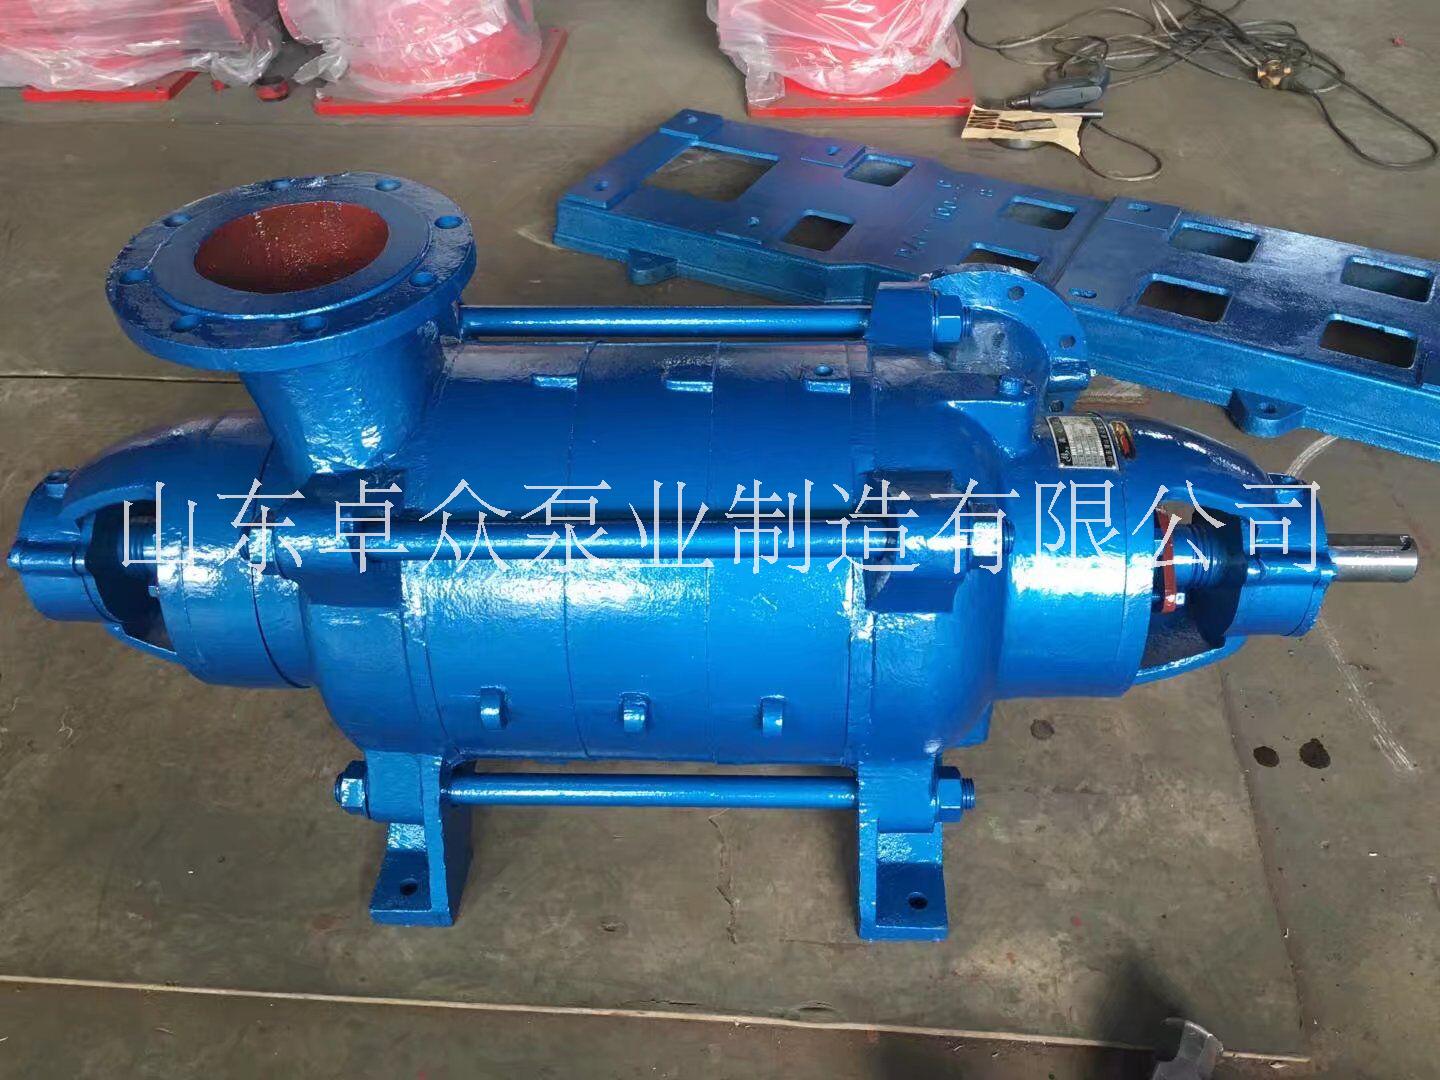 山东卓众泵业生产 DA1系列多级泵厂家 质量稳定图片